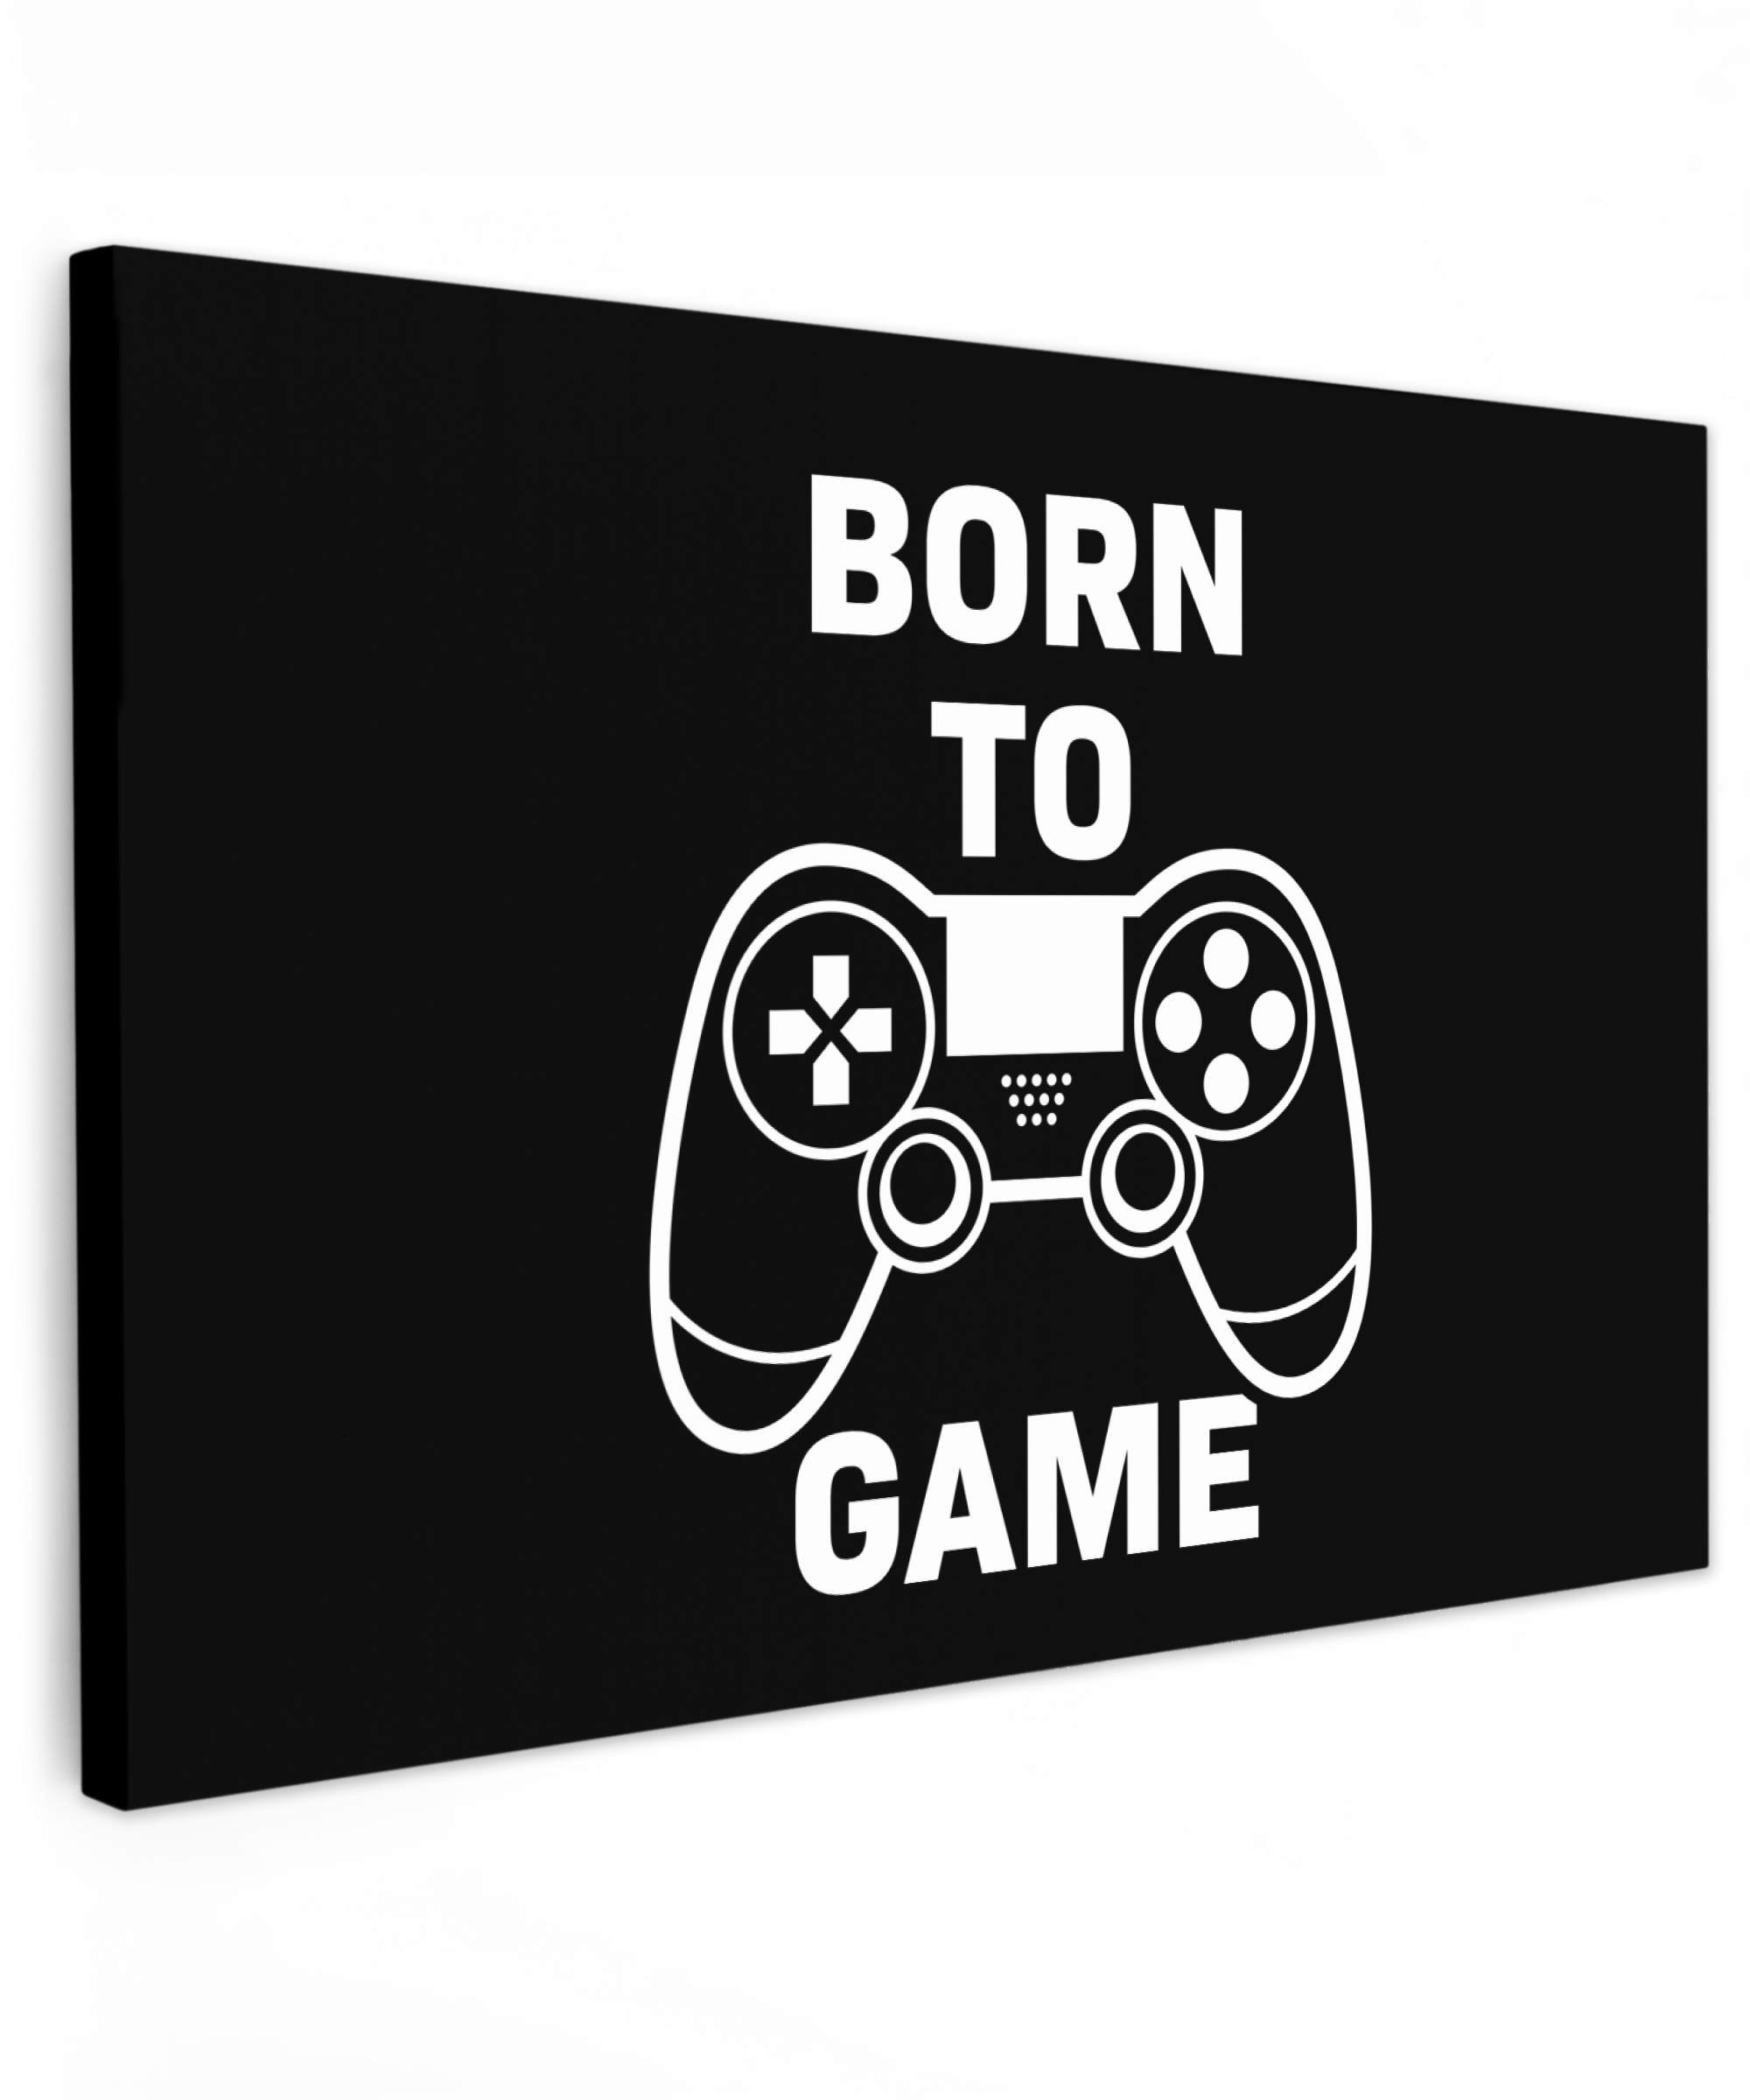 Leinwandbild - Gaming - Zitate - Controller - Zum Spielen geboren - Schwarz - Weiß